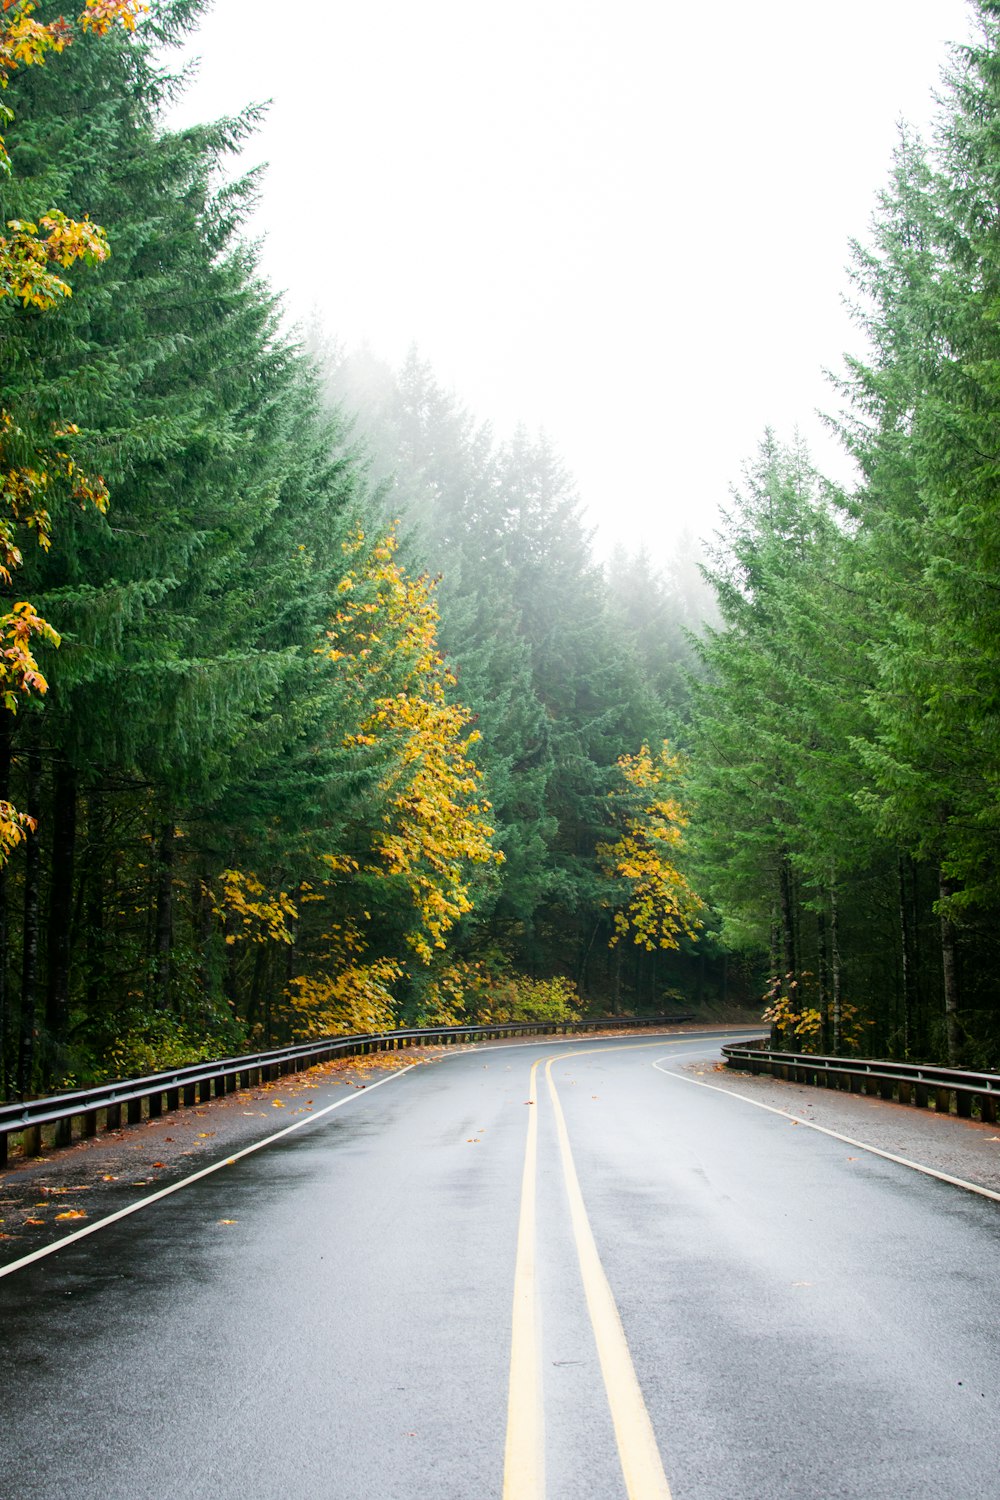 나무 사이의 빈 회색 콘크리트 도로